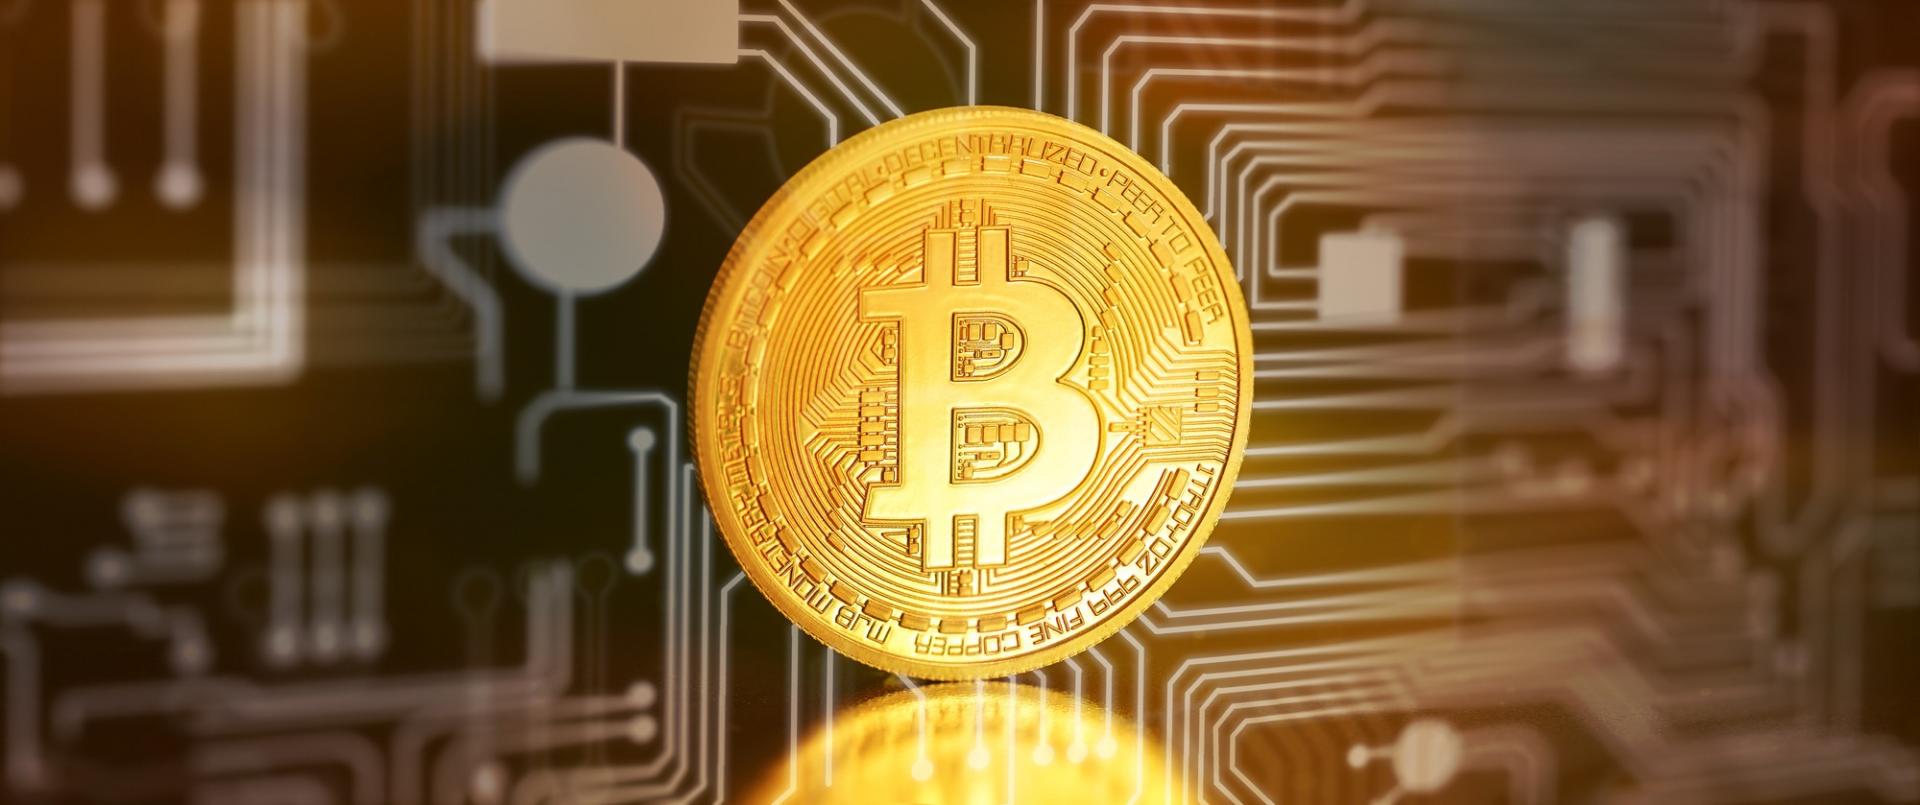 Bitcoin: come funziona la discussa moneta virtuale